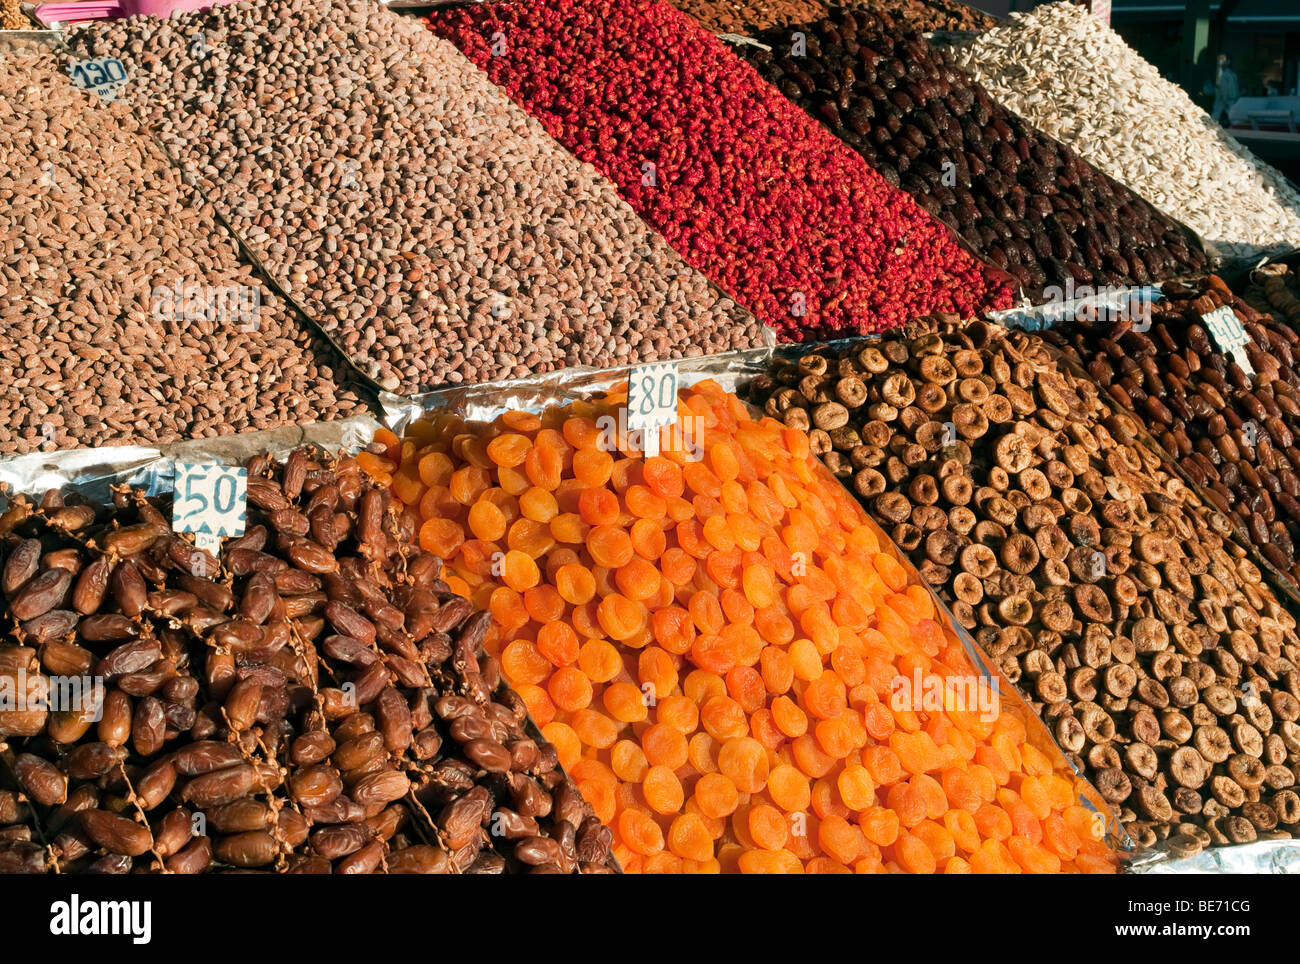 Les fruits secs, les noix et les dates dans un marché, place Djemaa el-Fna de Marrakech, Maroc, Afrique Banque D'Images